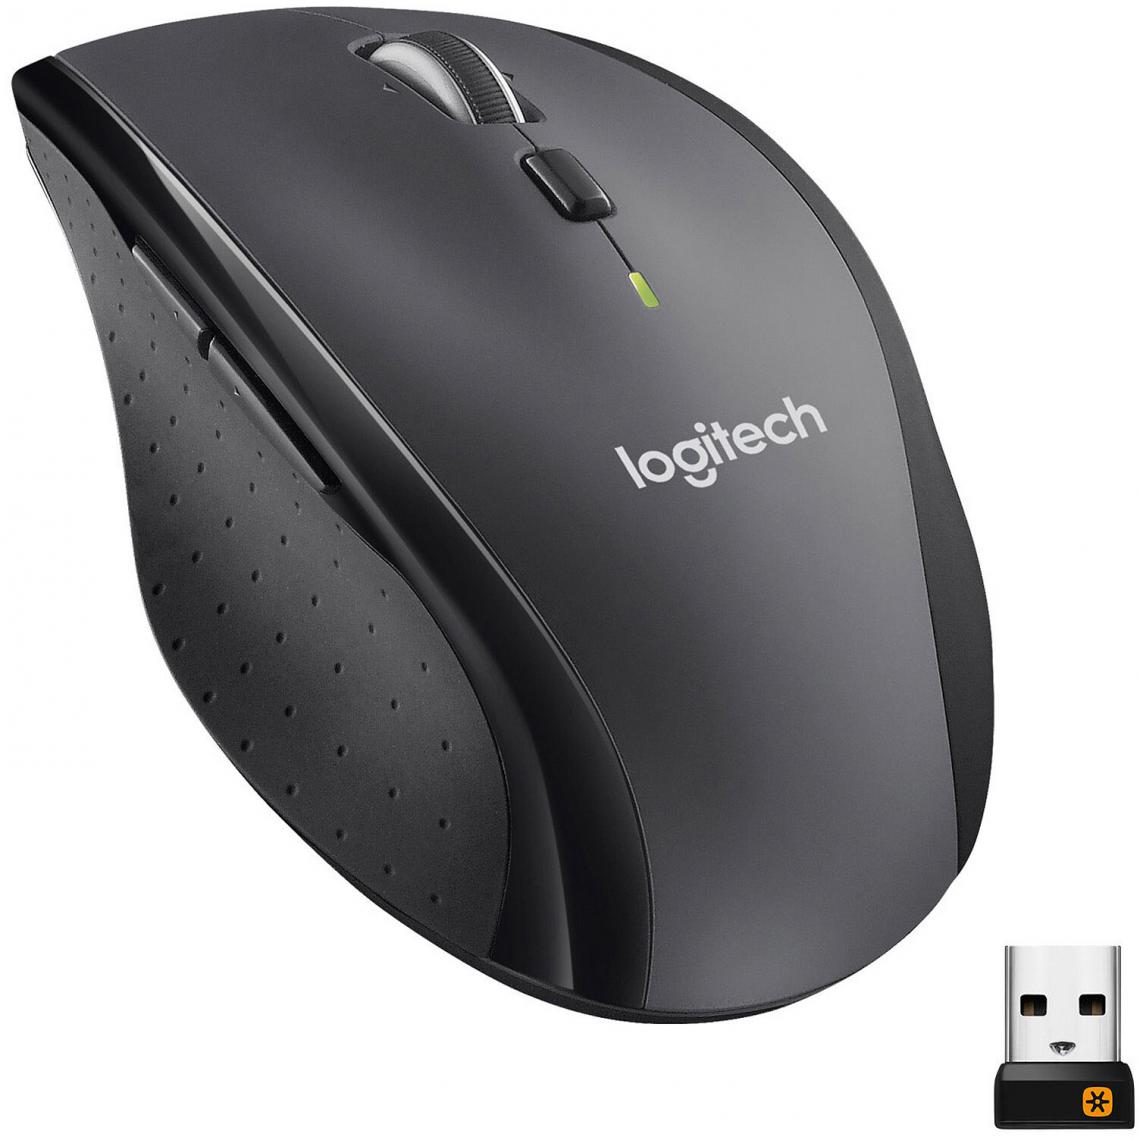 Logitech - Souris Marathon Mouse M705 Résolution optique 1000 dpi - Souris